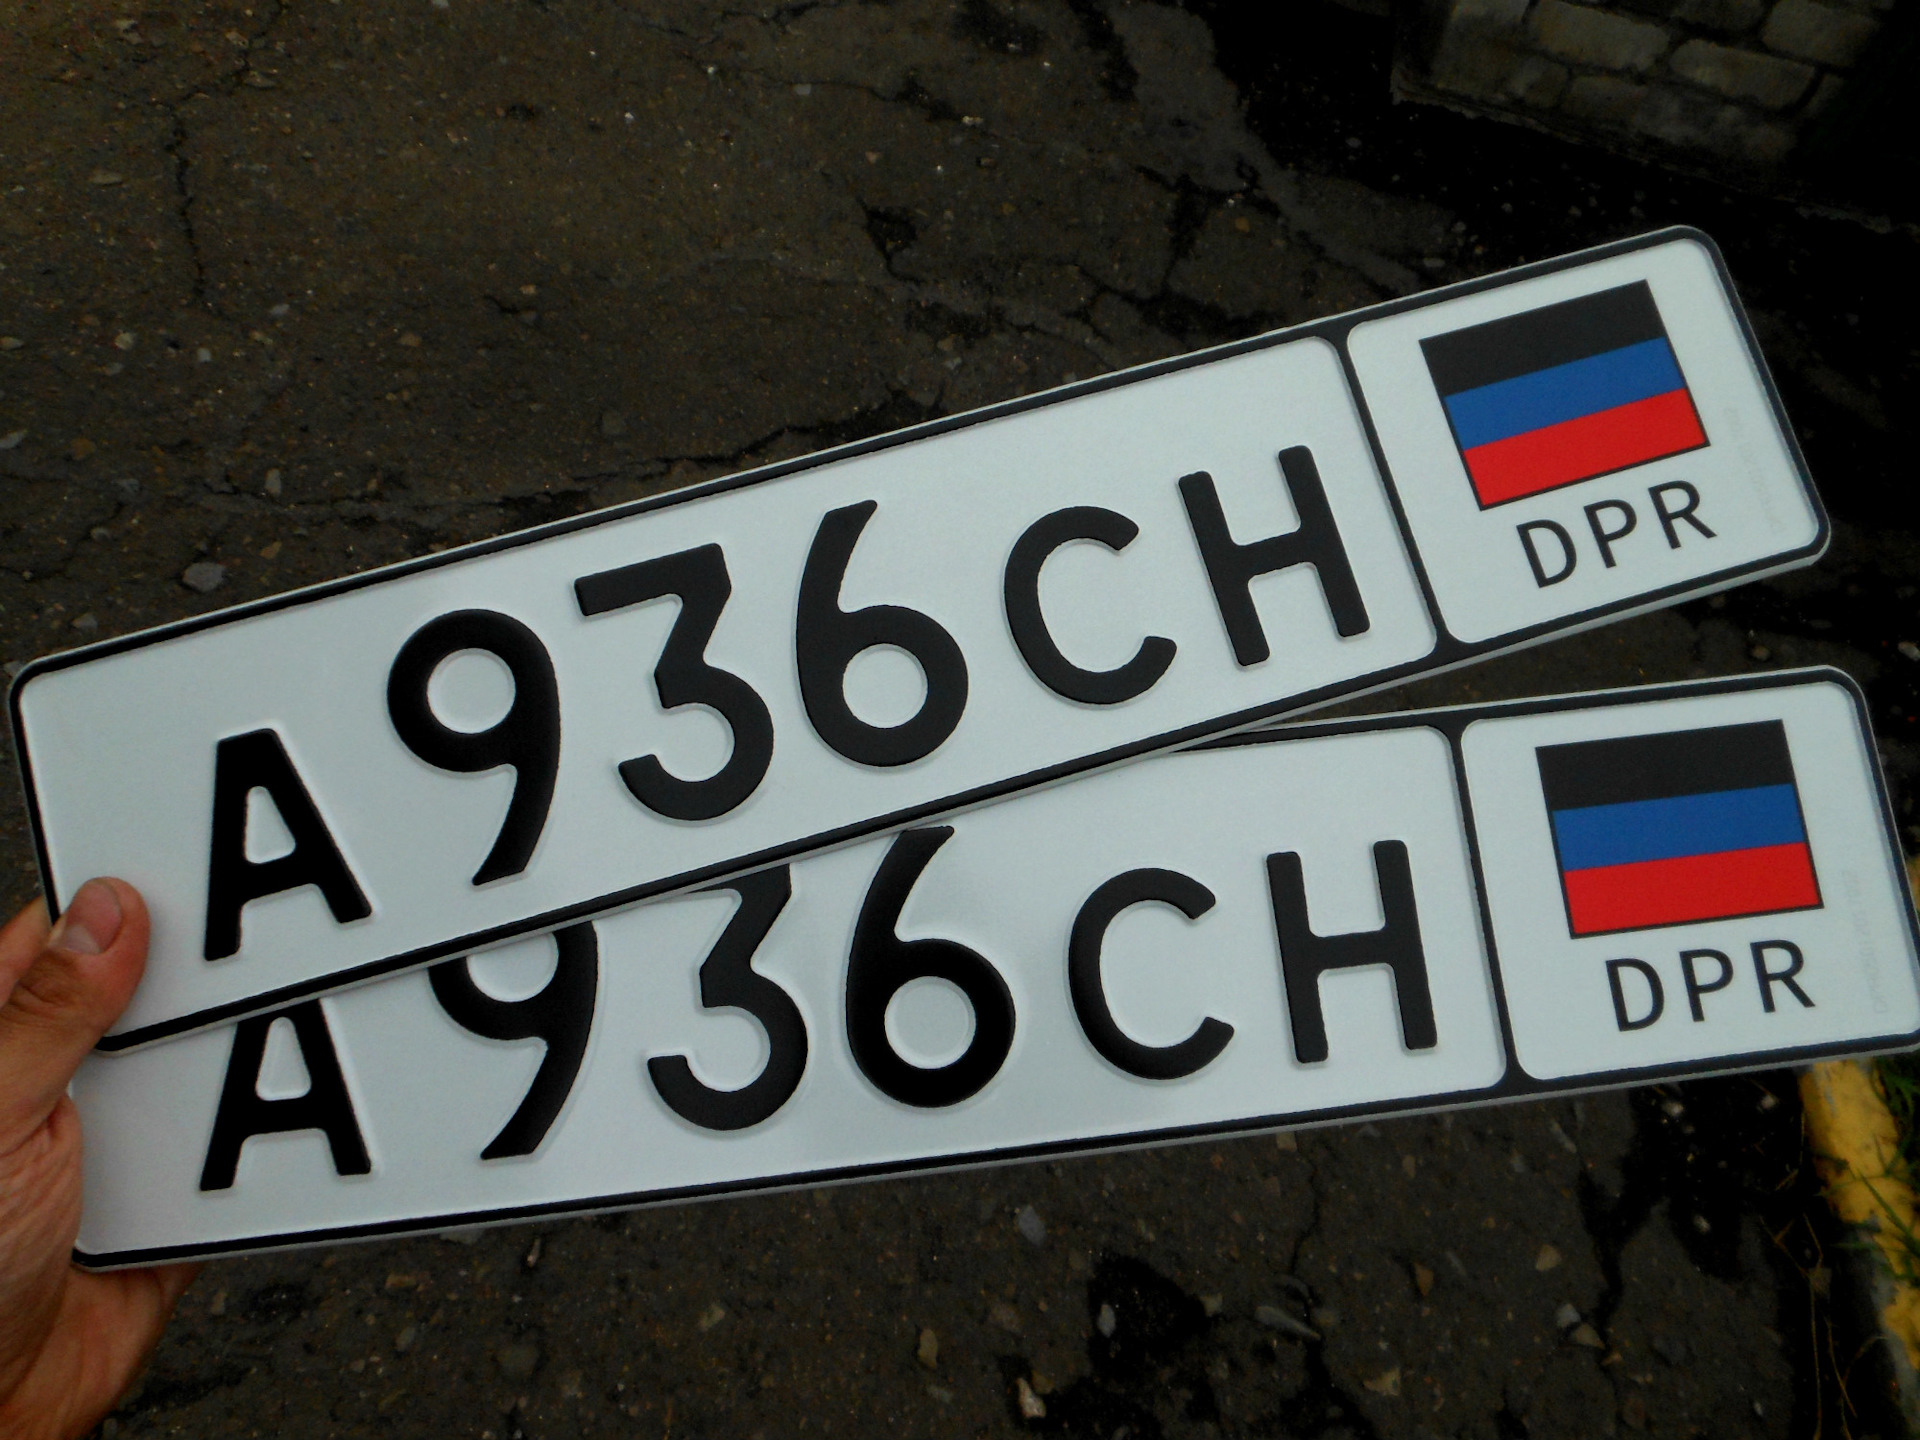 Автономера стран. Украинские гос номера. Украинские номера автомобилей. Украинские но ера машин. Украинские номерные знаки.